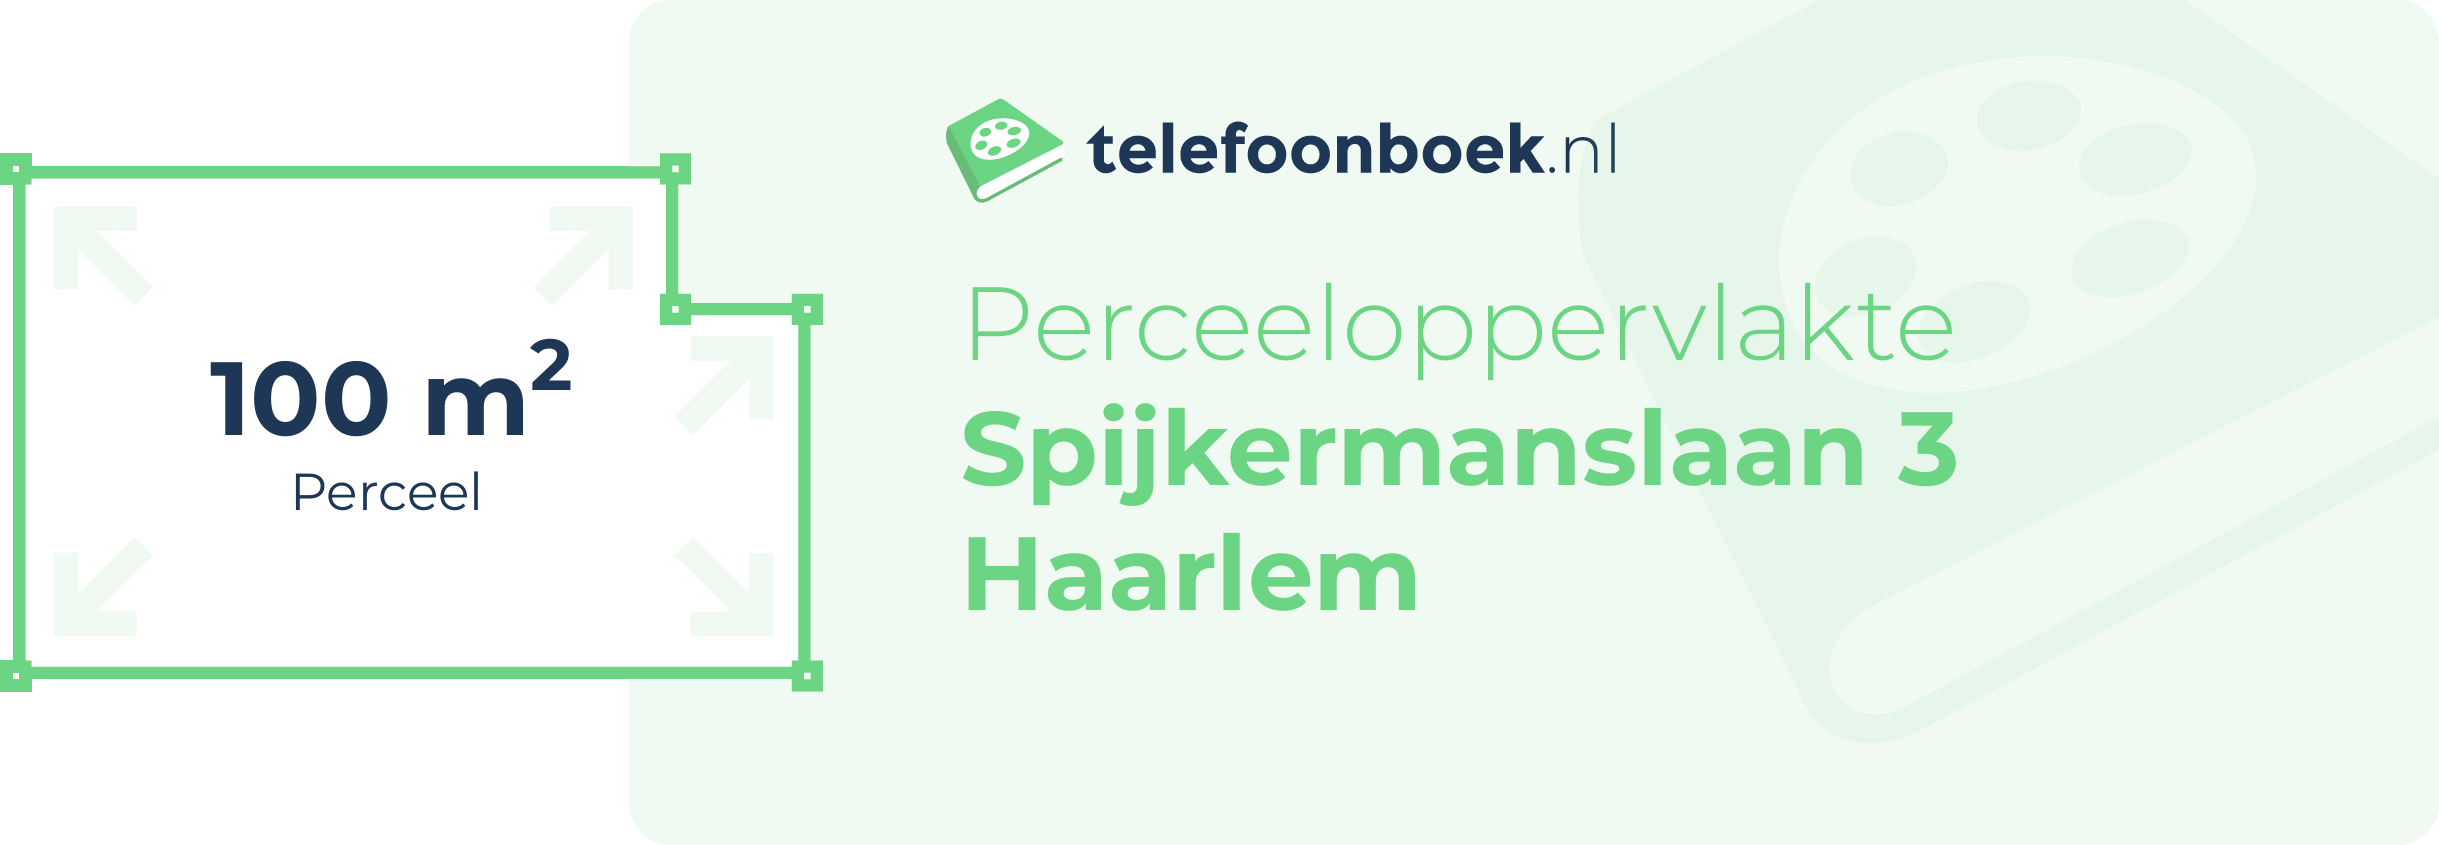 Perceeloppervlakte Spijkermanslaan 3 Haarlem